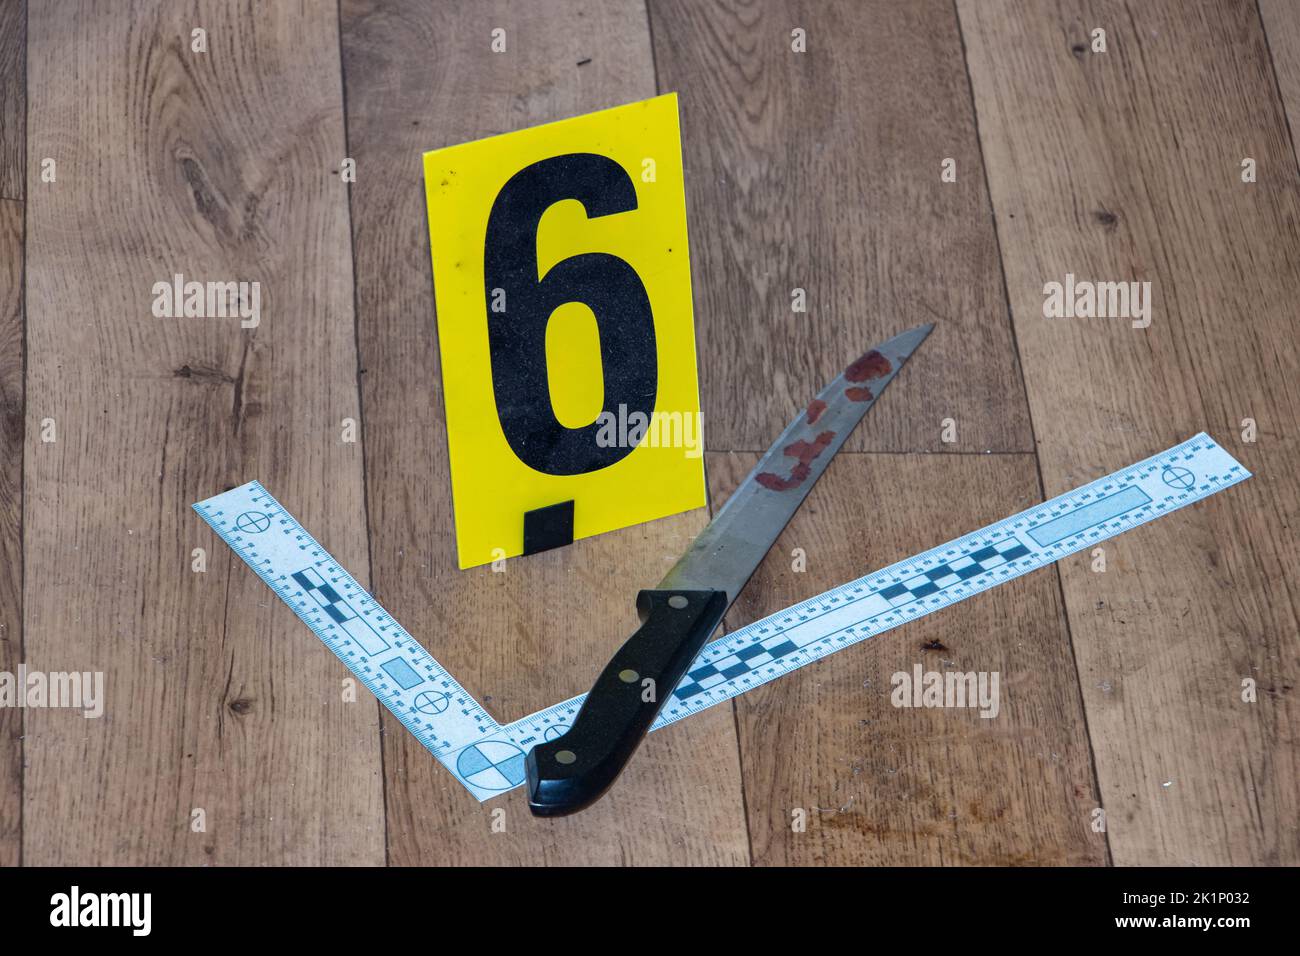 Prova segnata con un numero - coltello sanguinoso sulla scena del crimine Foto Stock